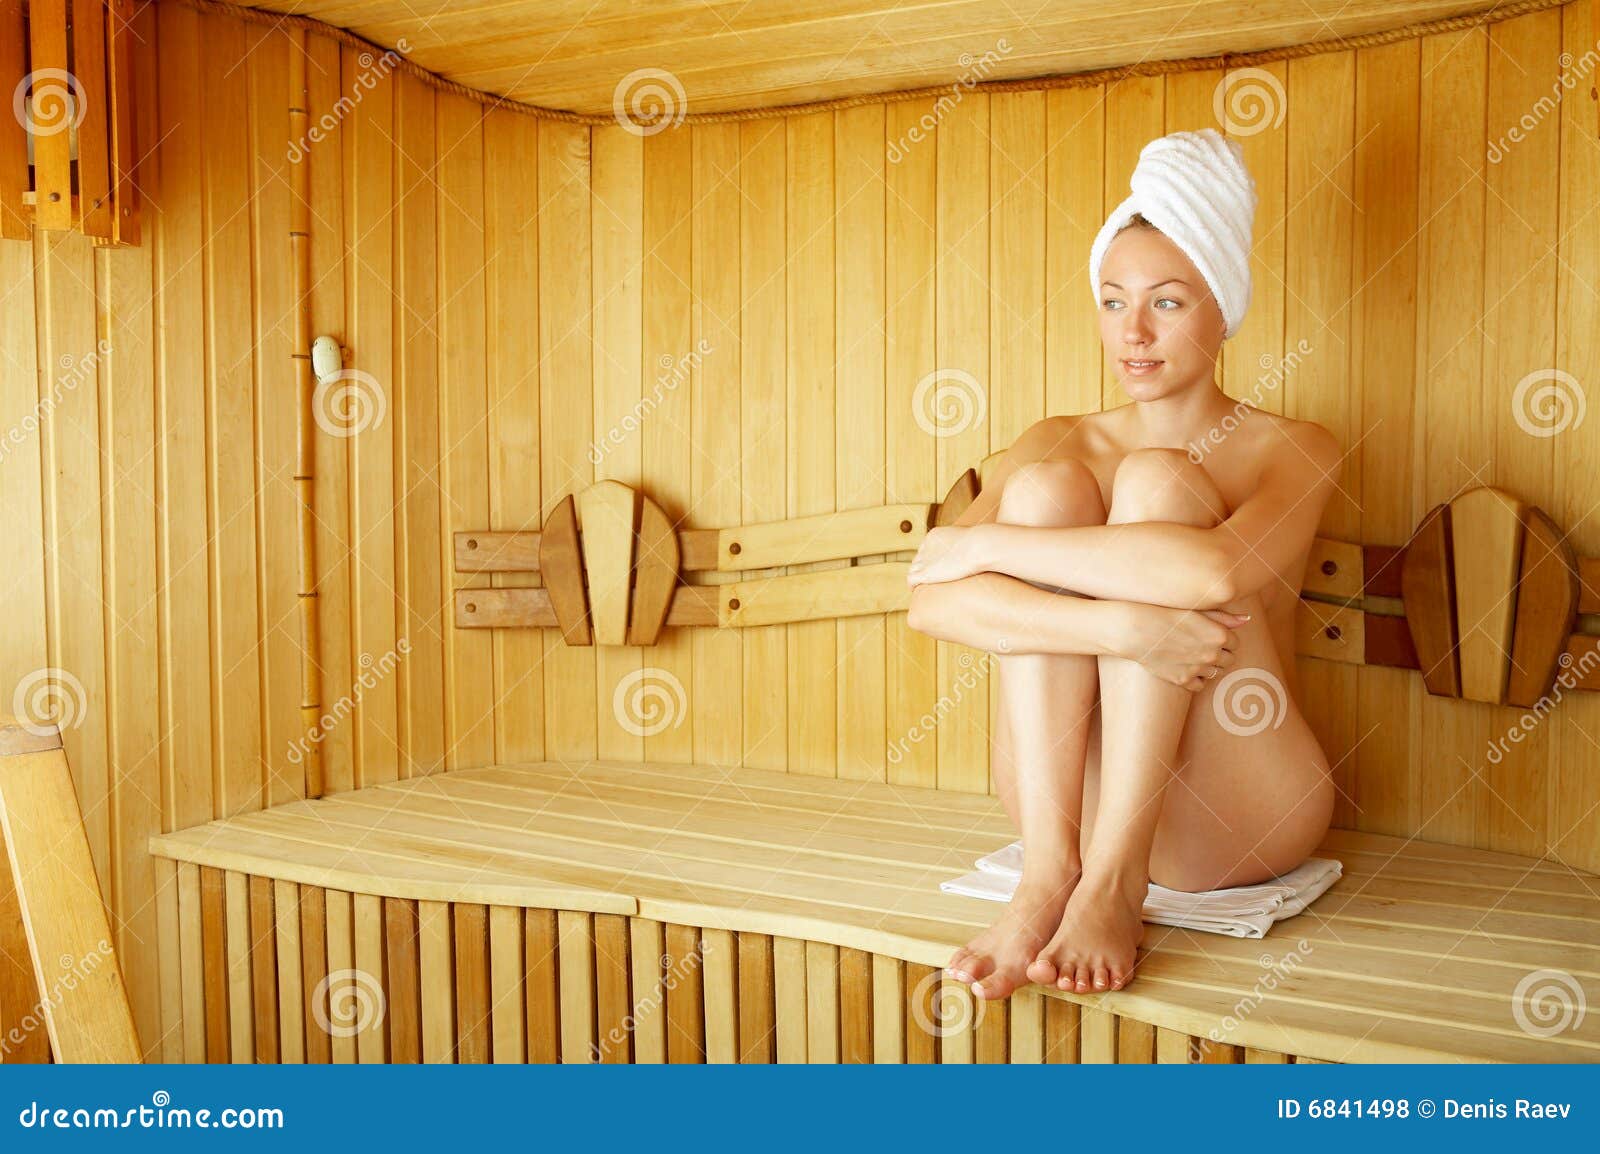 Фото в женщин бане